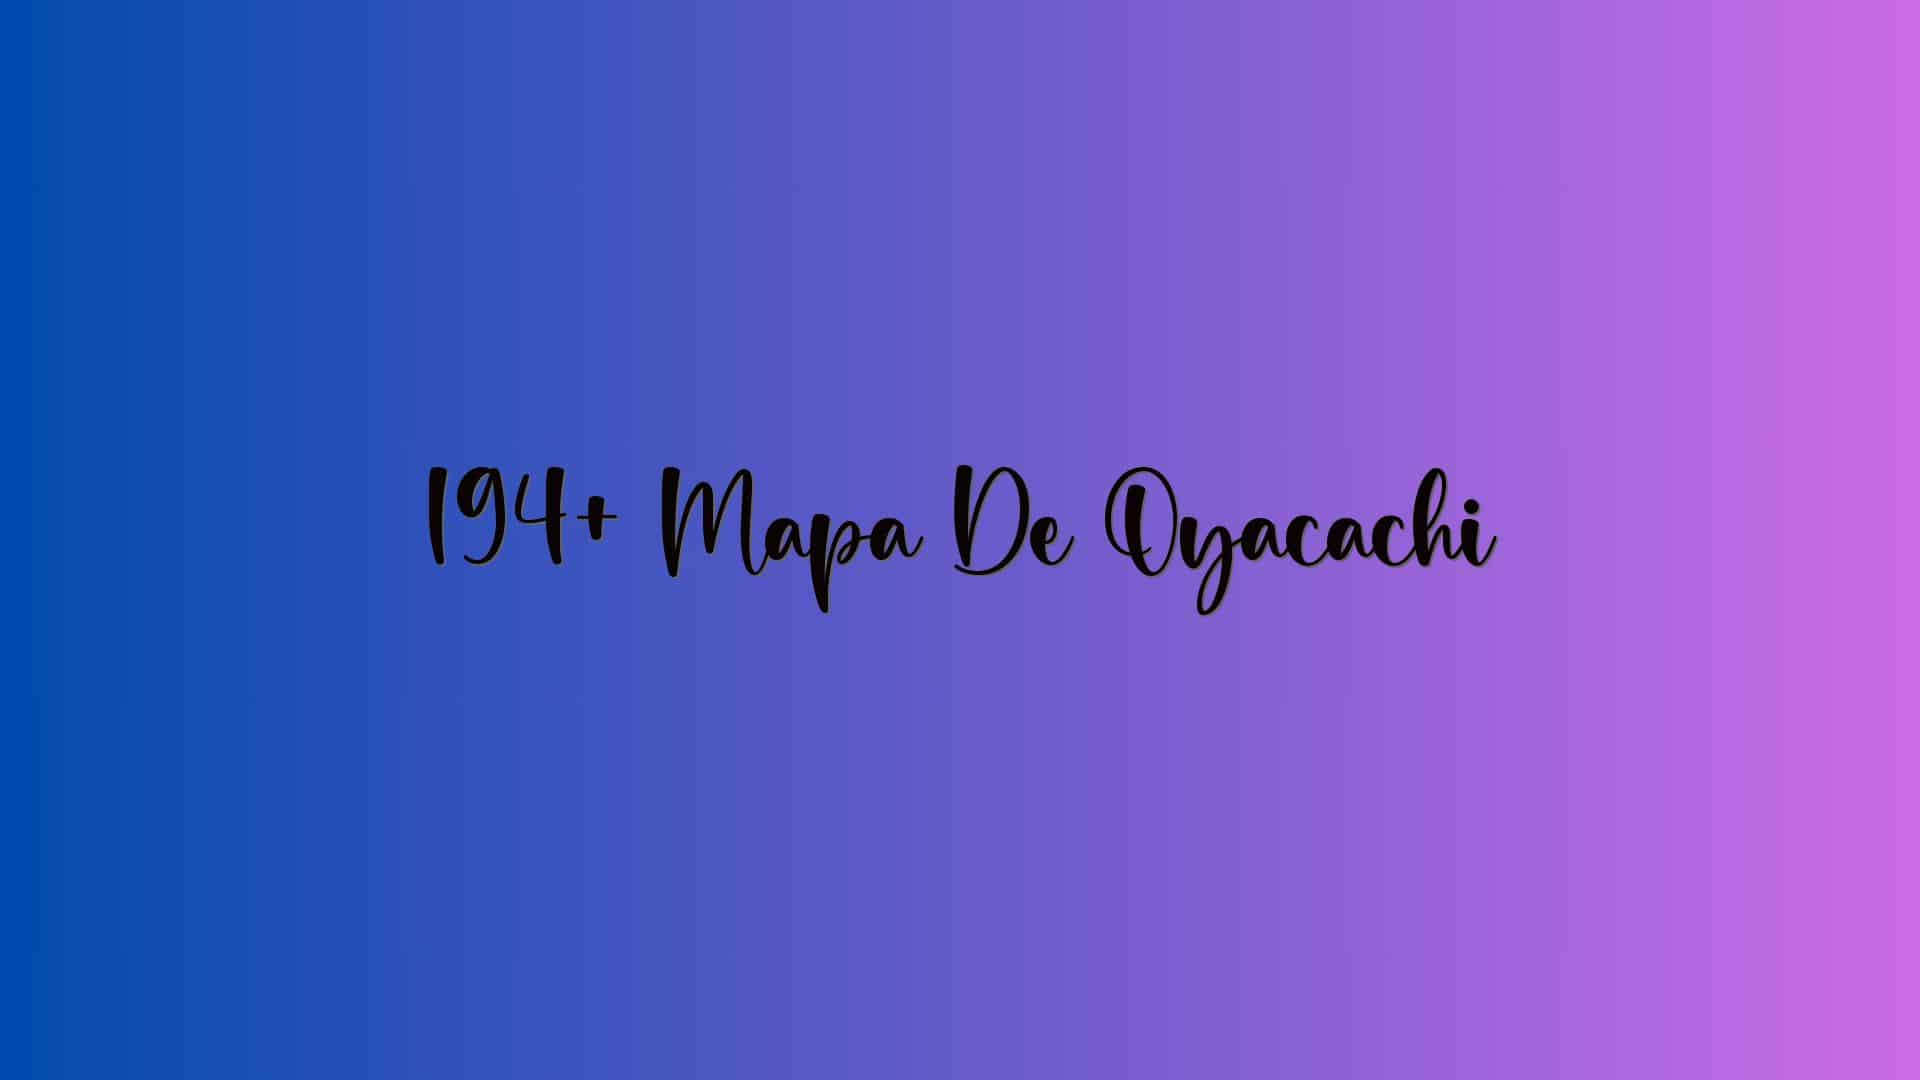 194+ Mapa De Oyacachi